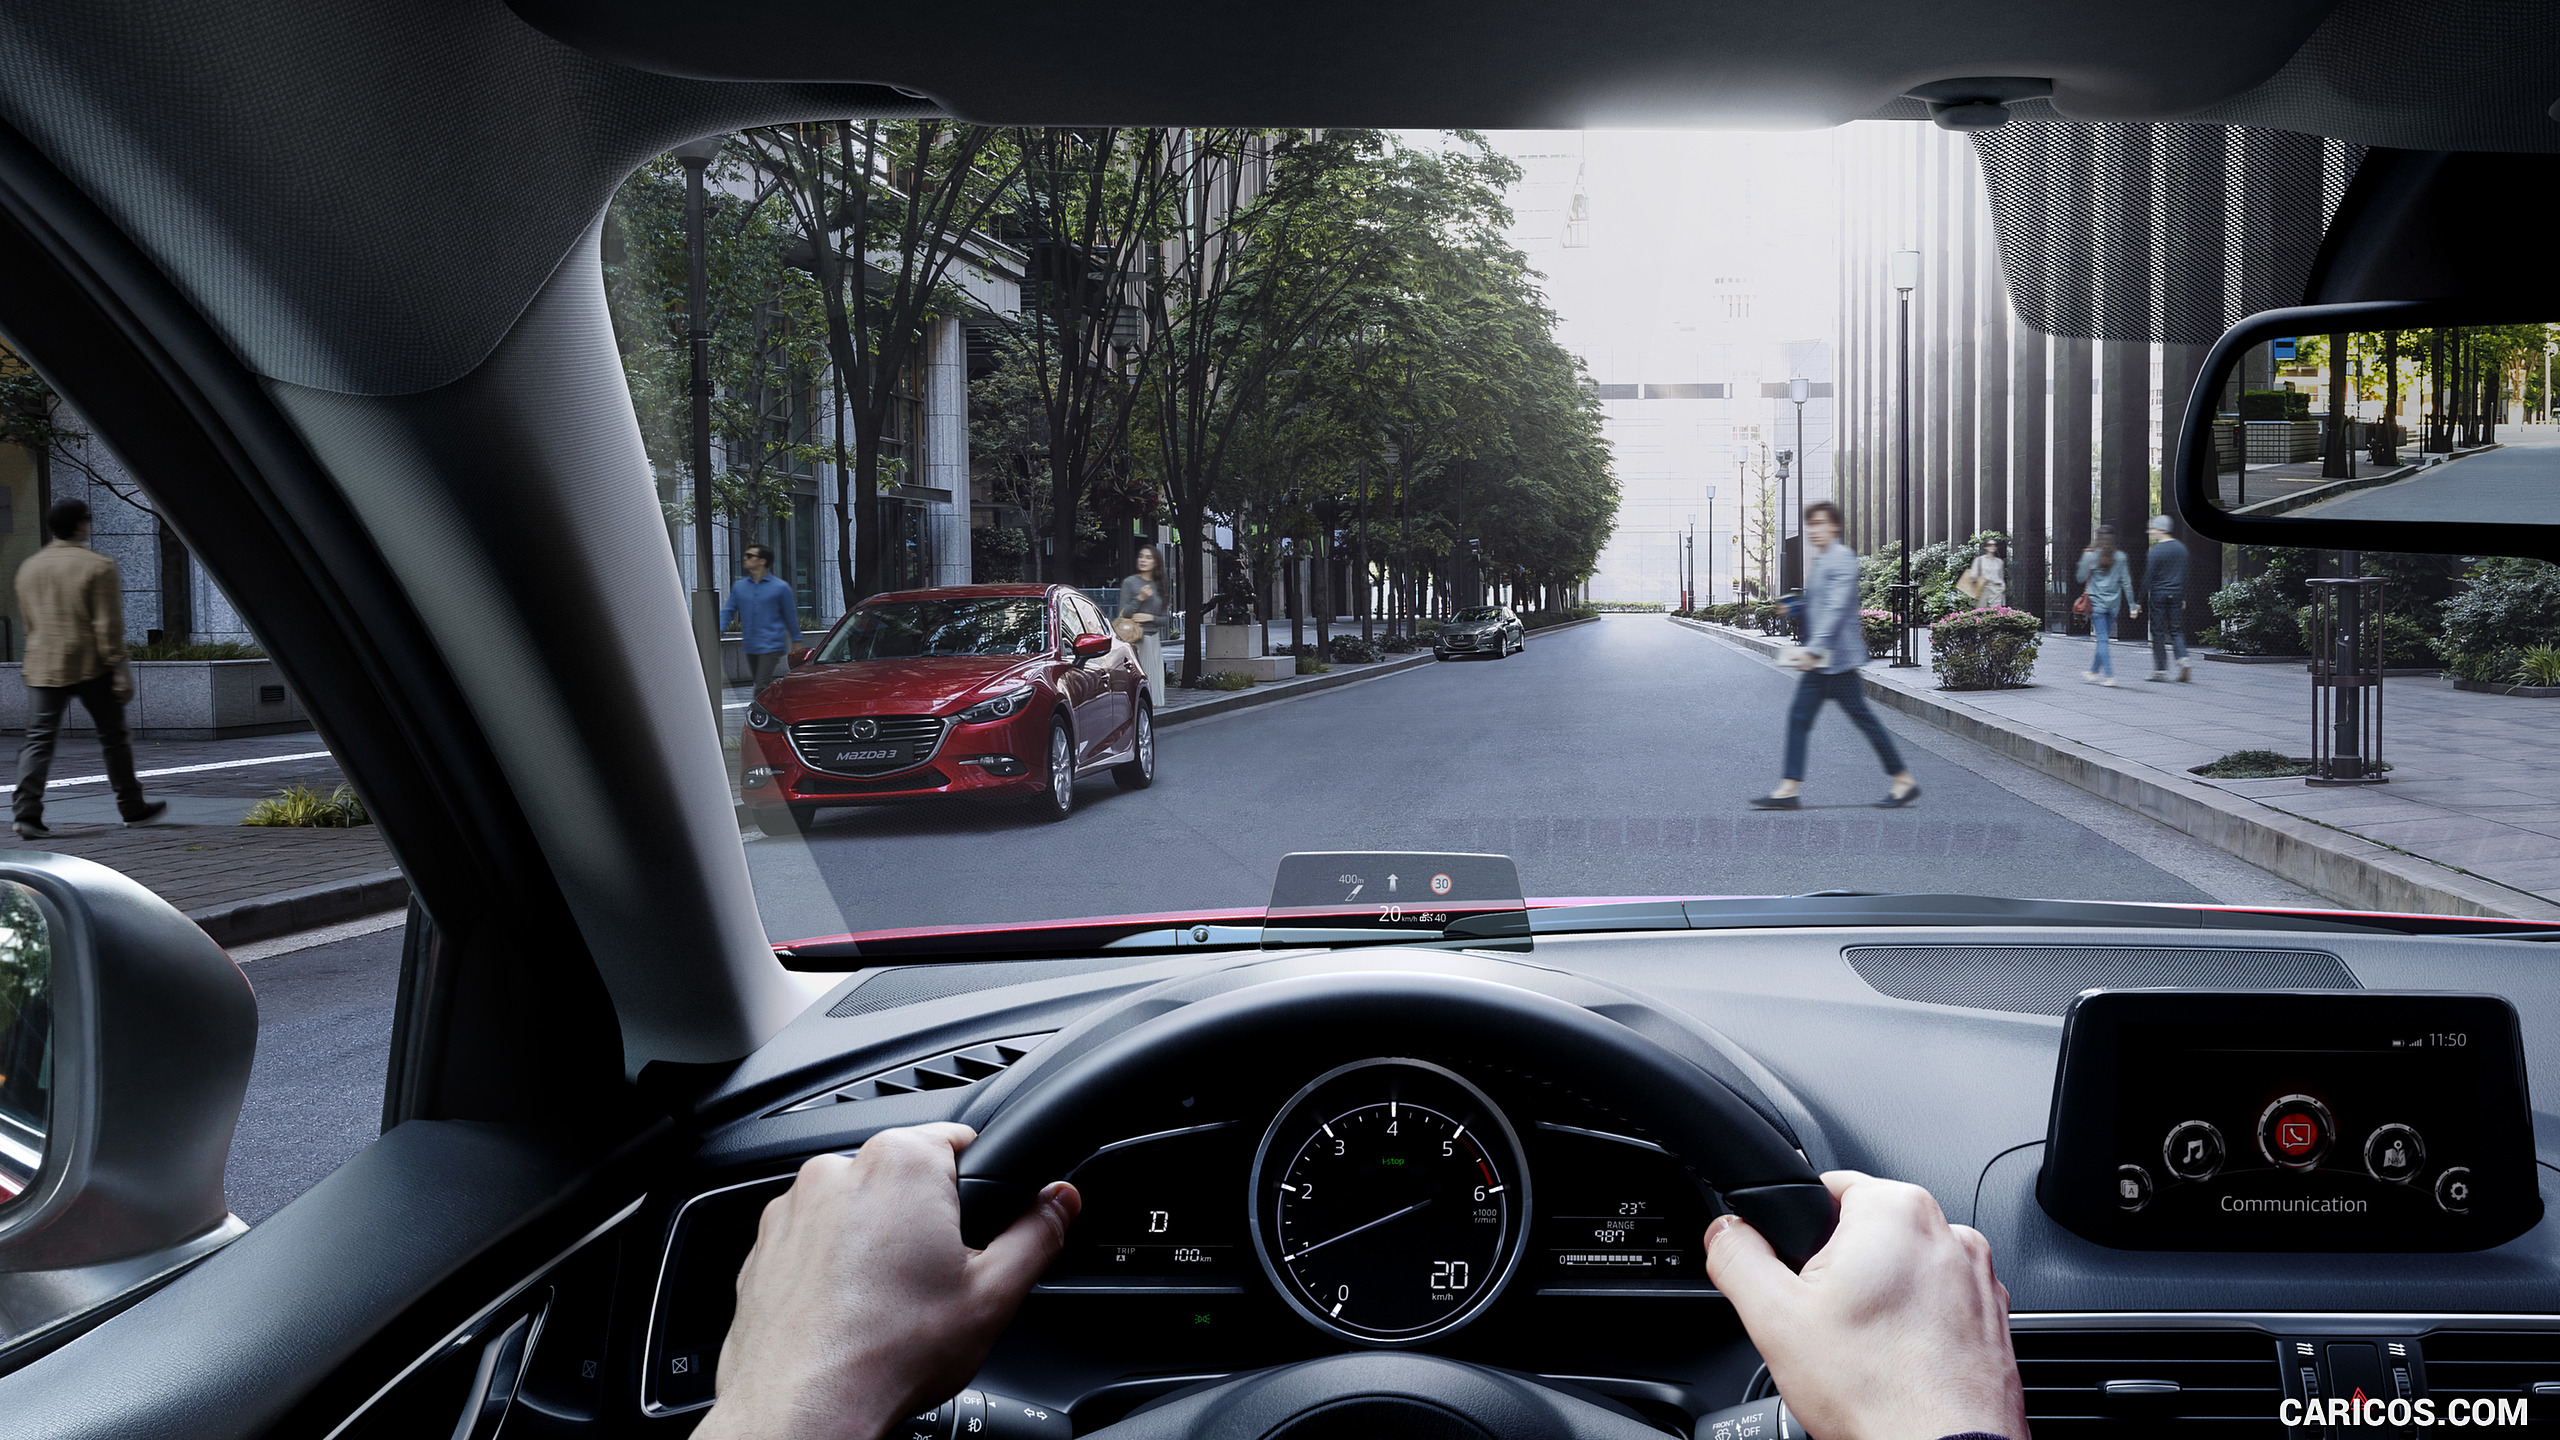 2017 Mazda 3 5-Door Hatchback - Interior, Head-Up Display, #7 of 19